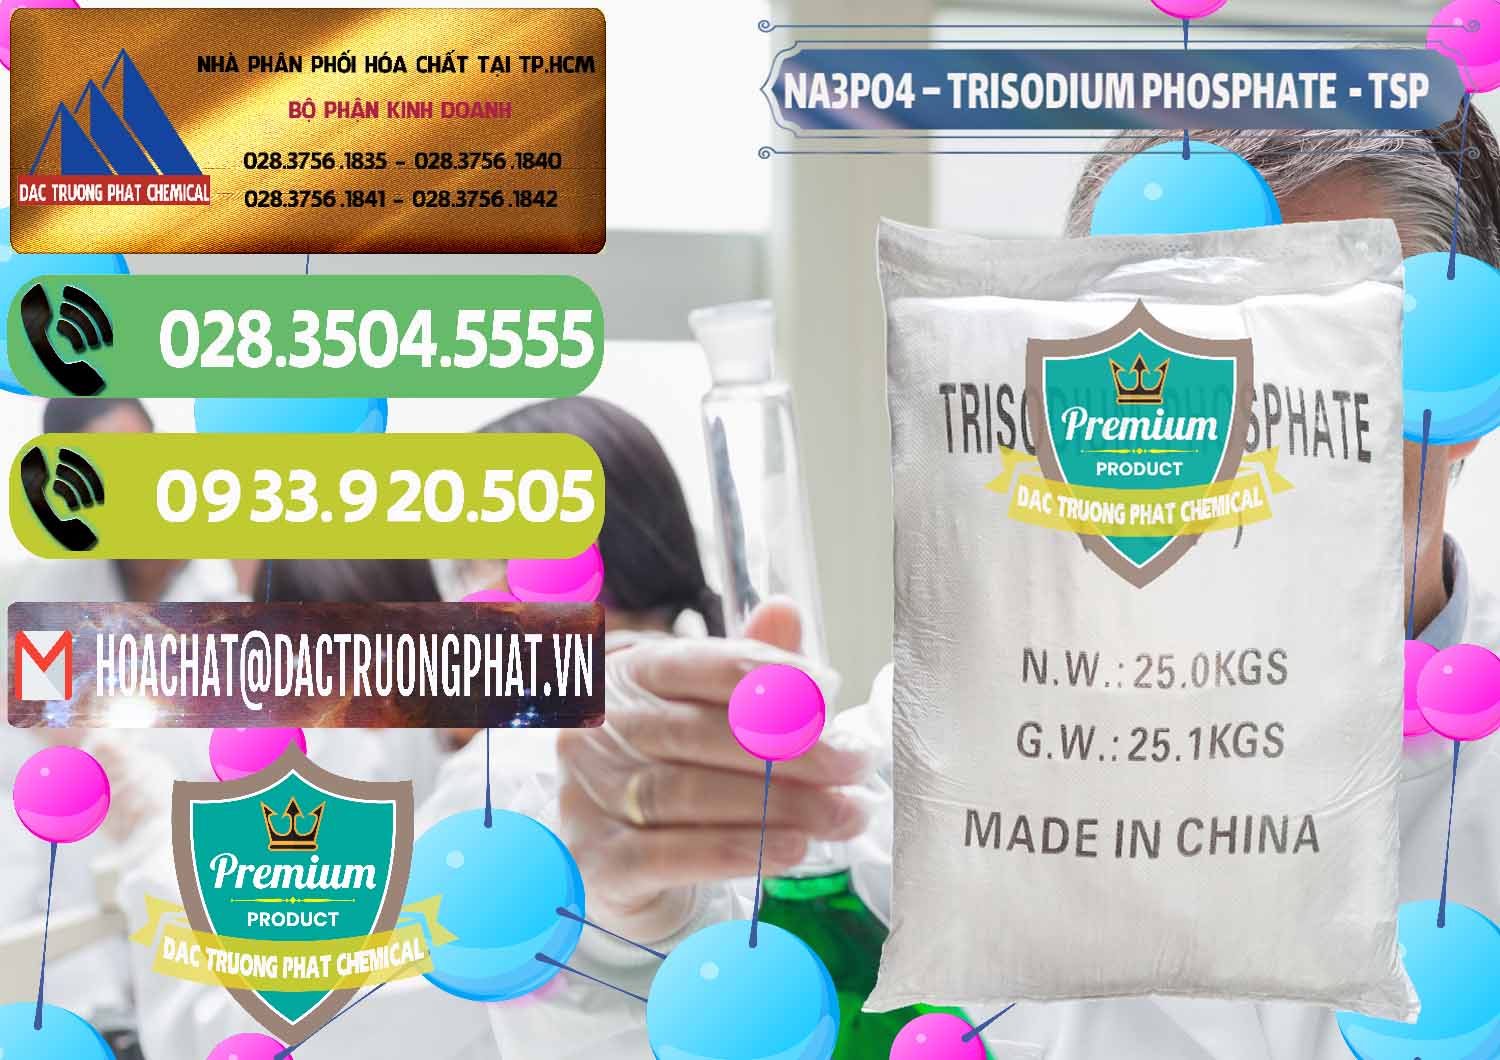 Cty chuyên bán và cung cấp Na3PO4 – Trisodium Phosphate Trung Quốc China TSP - 0103 - Công ty chuyên cung cấp _ kinh doanh hóa chất tại TP.HCM - hoachatmientay.vn